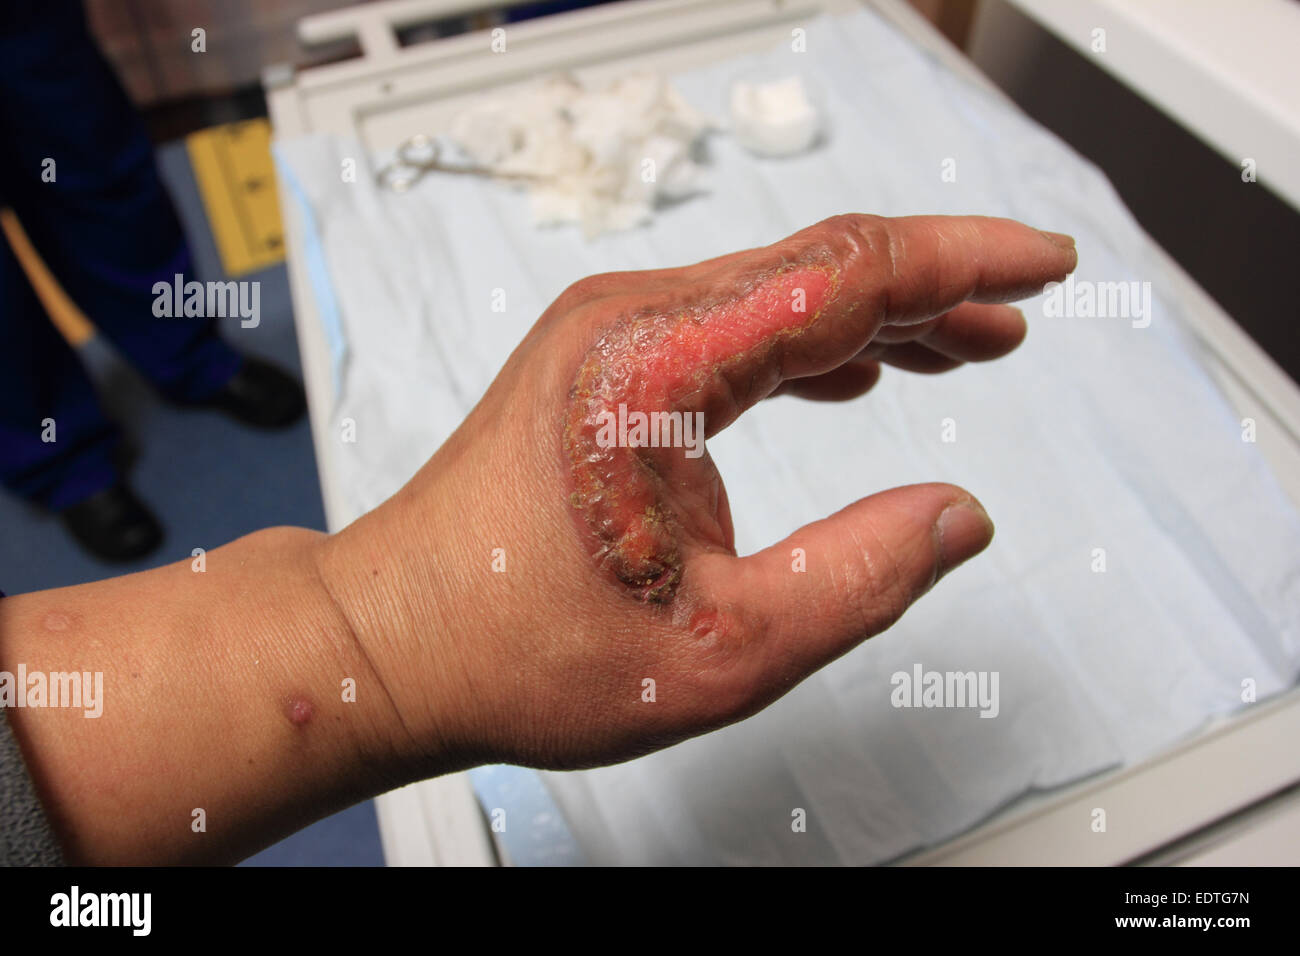 Izquierda masculino tiene un accidente, quemadura de segundo grado, la curación de la herida en la mano izquierda, Norfolk, UK Foto de stock